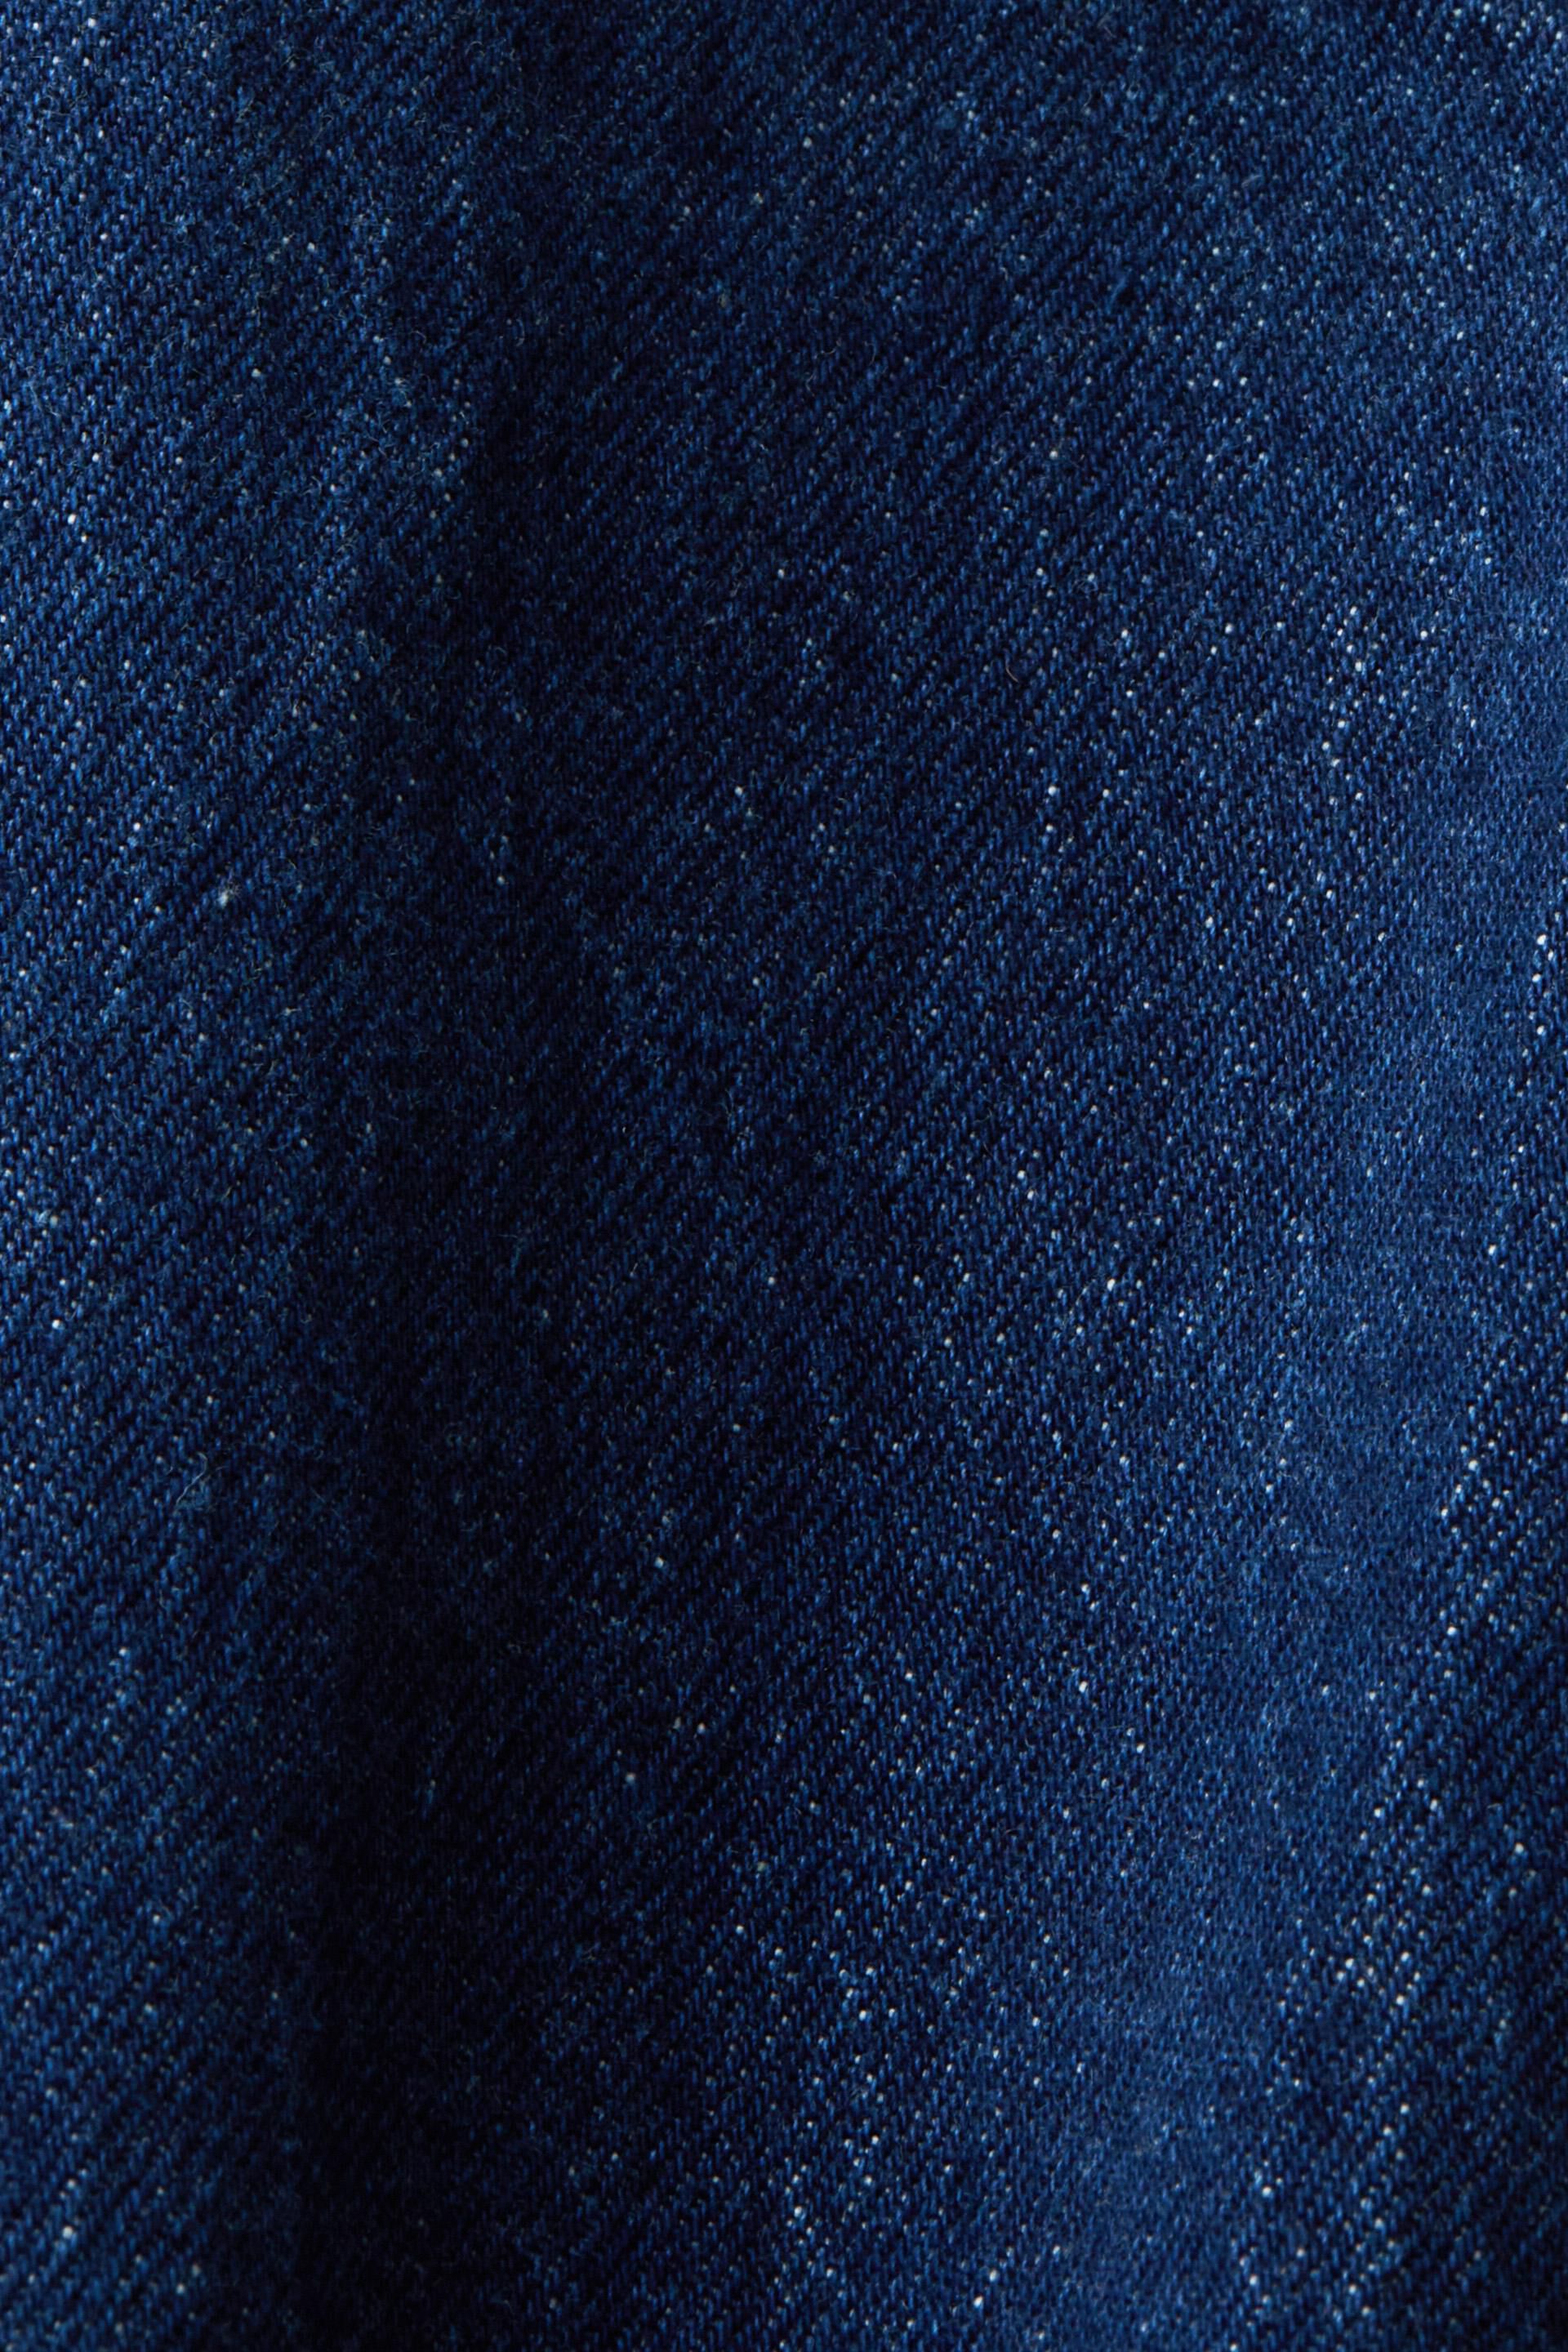 Esprit Stretch-Baumwolle Jeans-Truckerjacke aus